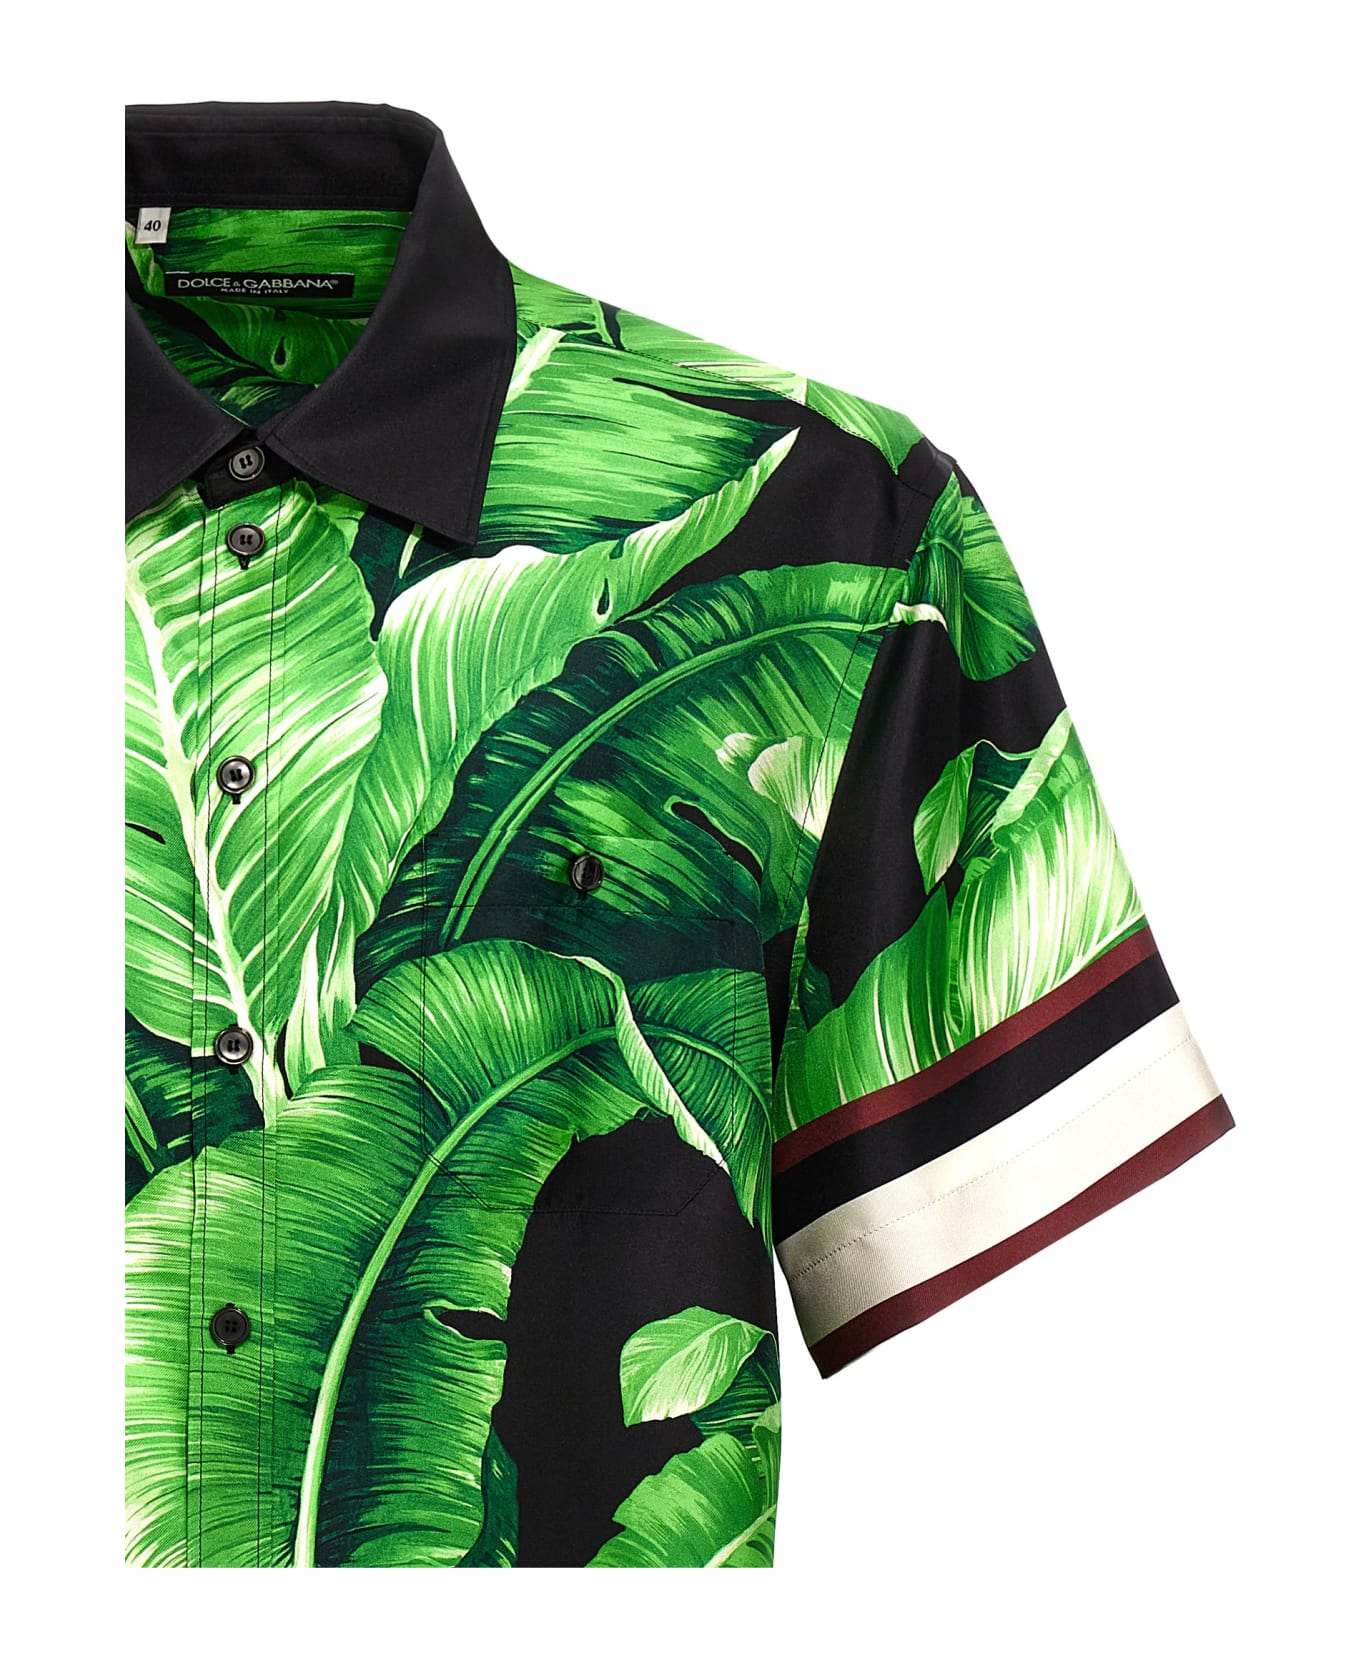 Dolce & Gabbana Banano Silk Shirt - Green シャツ